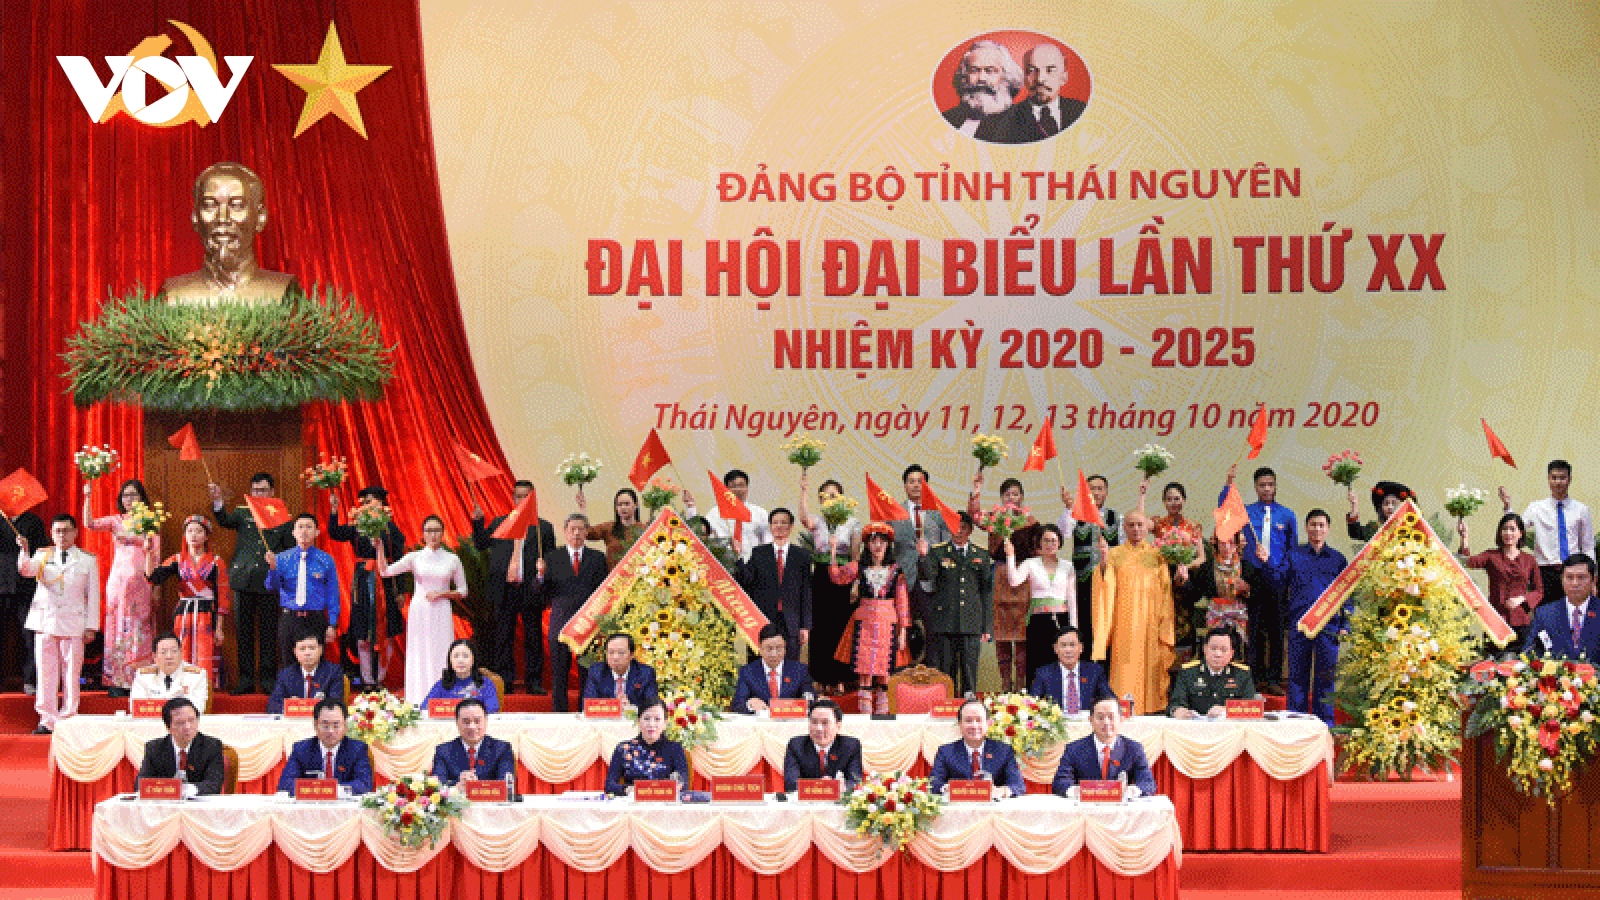 Khai mạc Đại hội đại biểu Đảng bộ tỉnh Thái Nguyên lần thứ XX